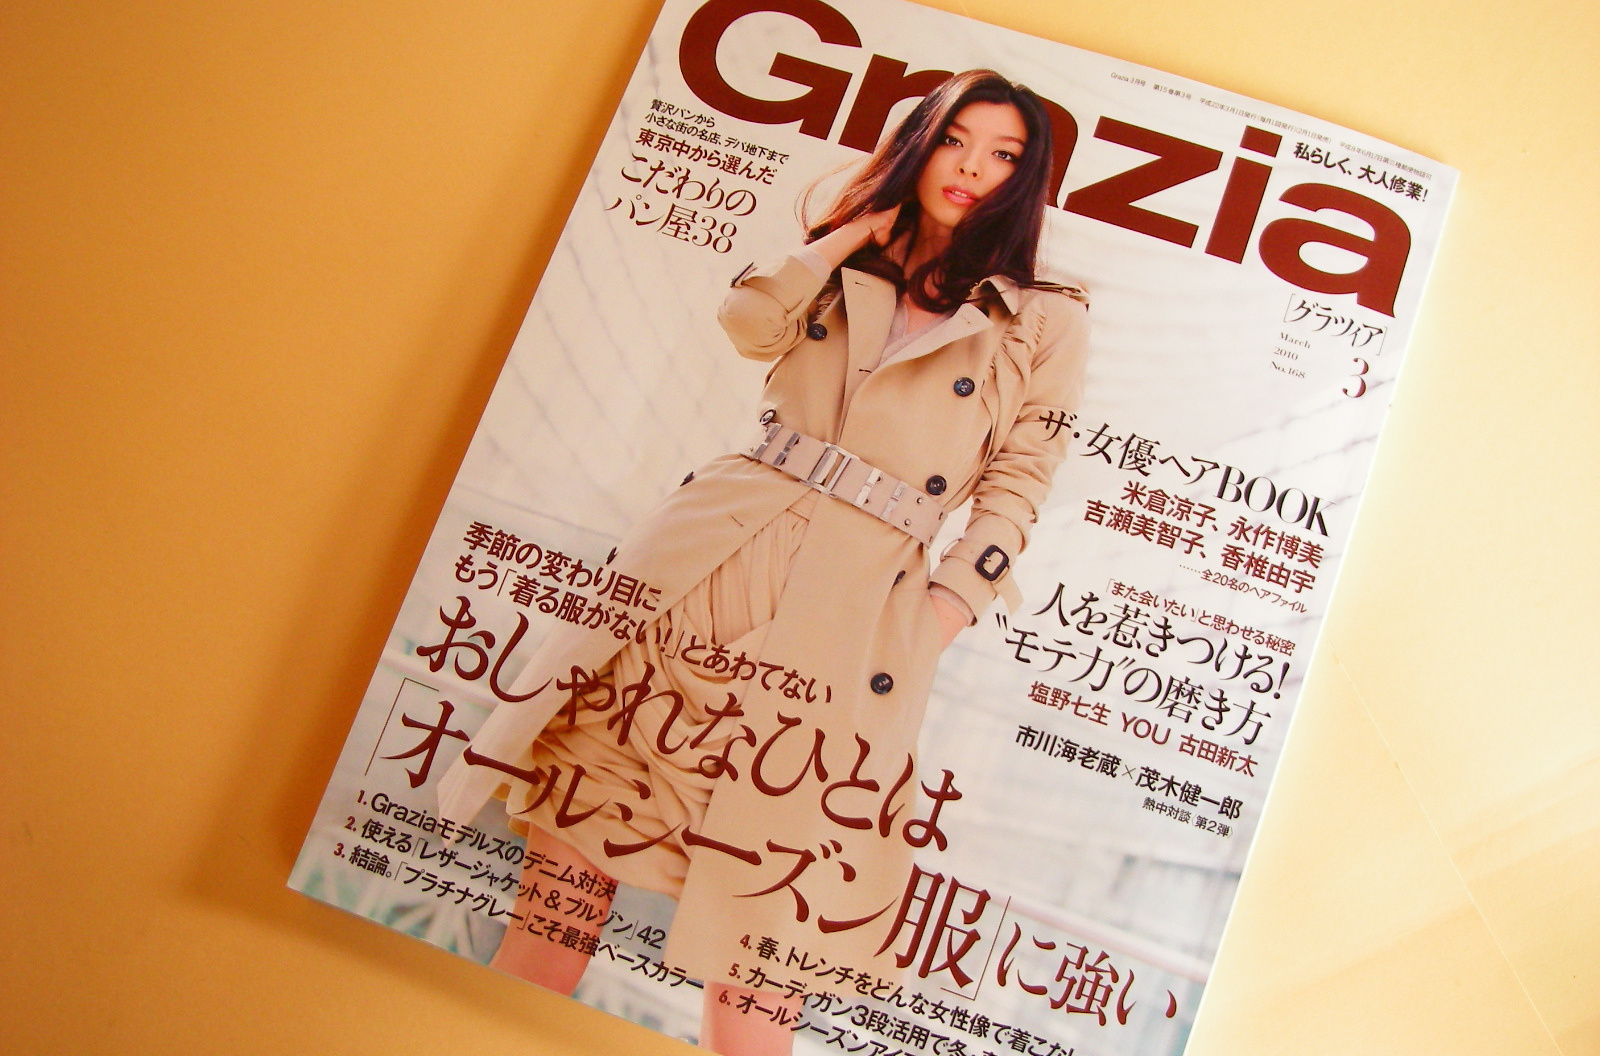 雑誌の「grazia」の中で、料理研究家の有元葉子さんが、娘さんにプレゼントされた小さき物の世界